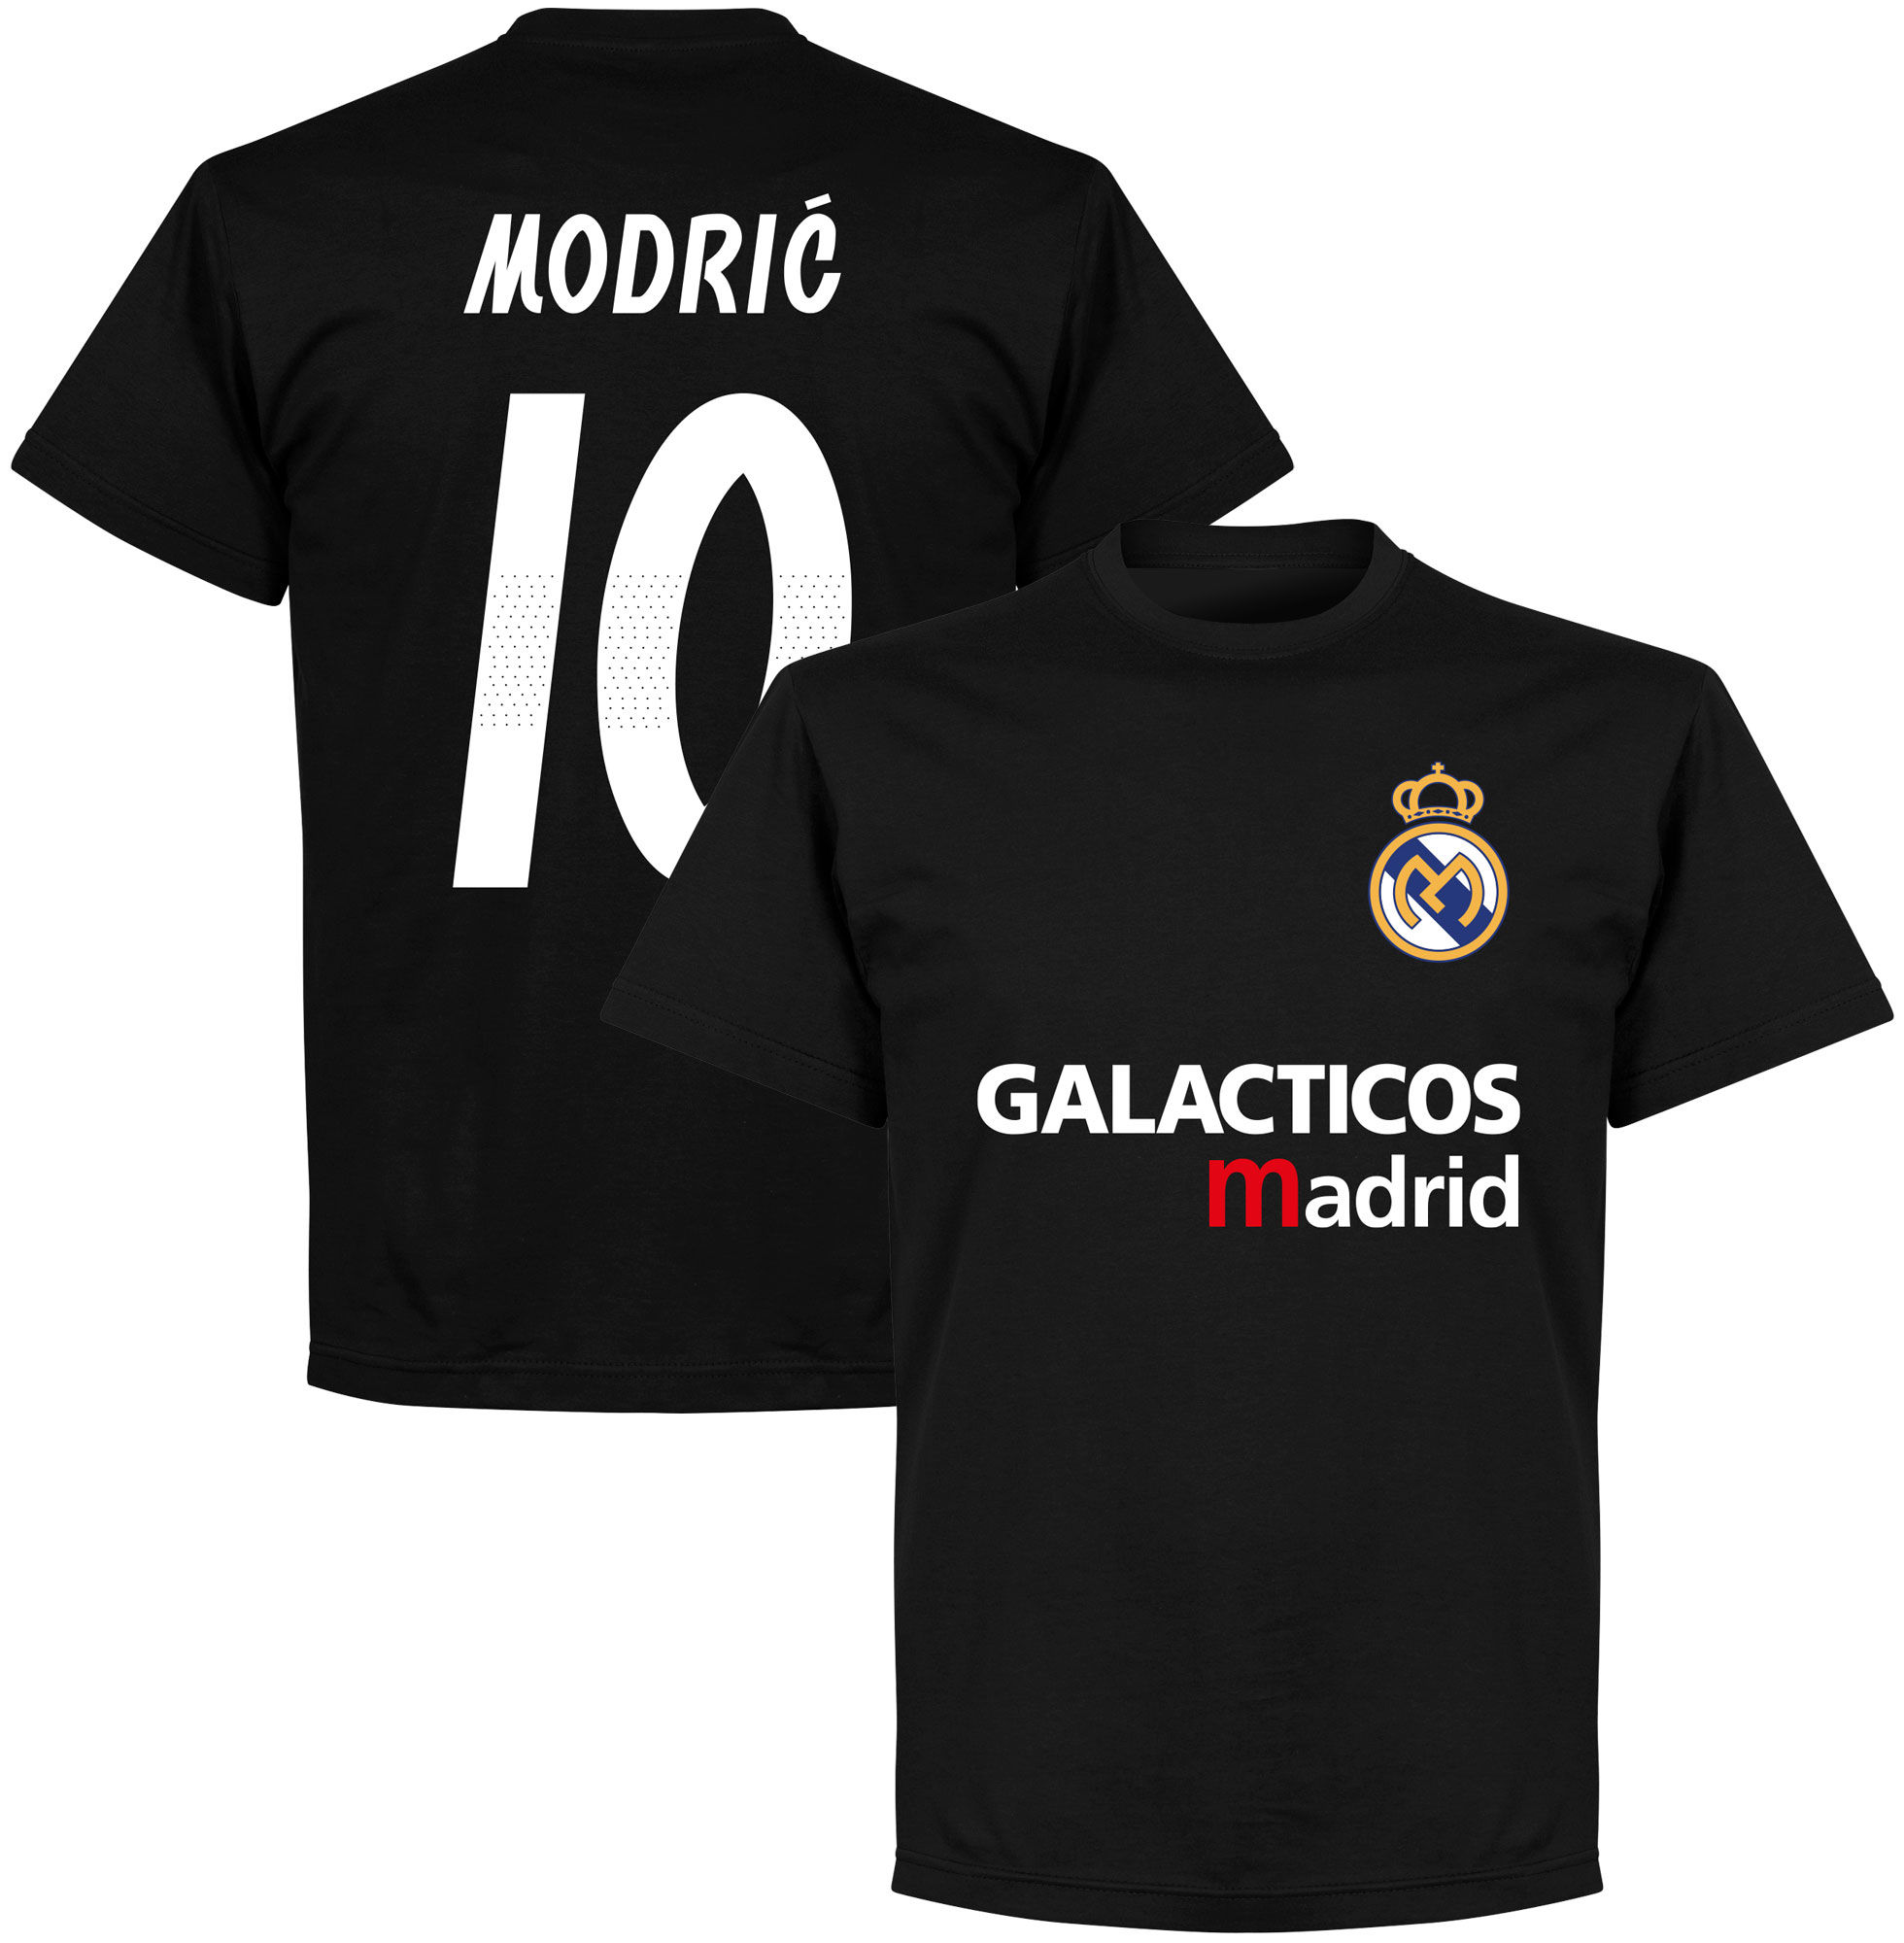 Real Madrid - Tričko "Galácticos Madrid" - Luka Modrić, číslo 10, černé